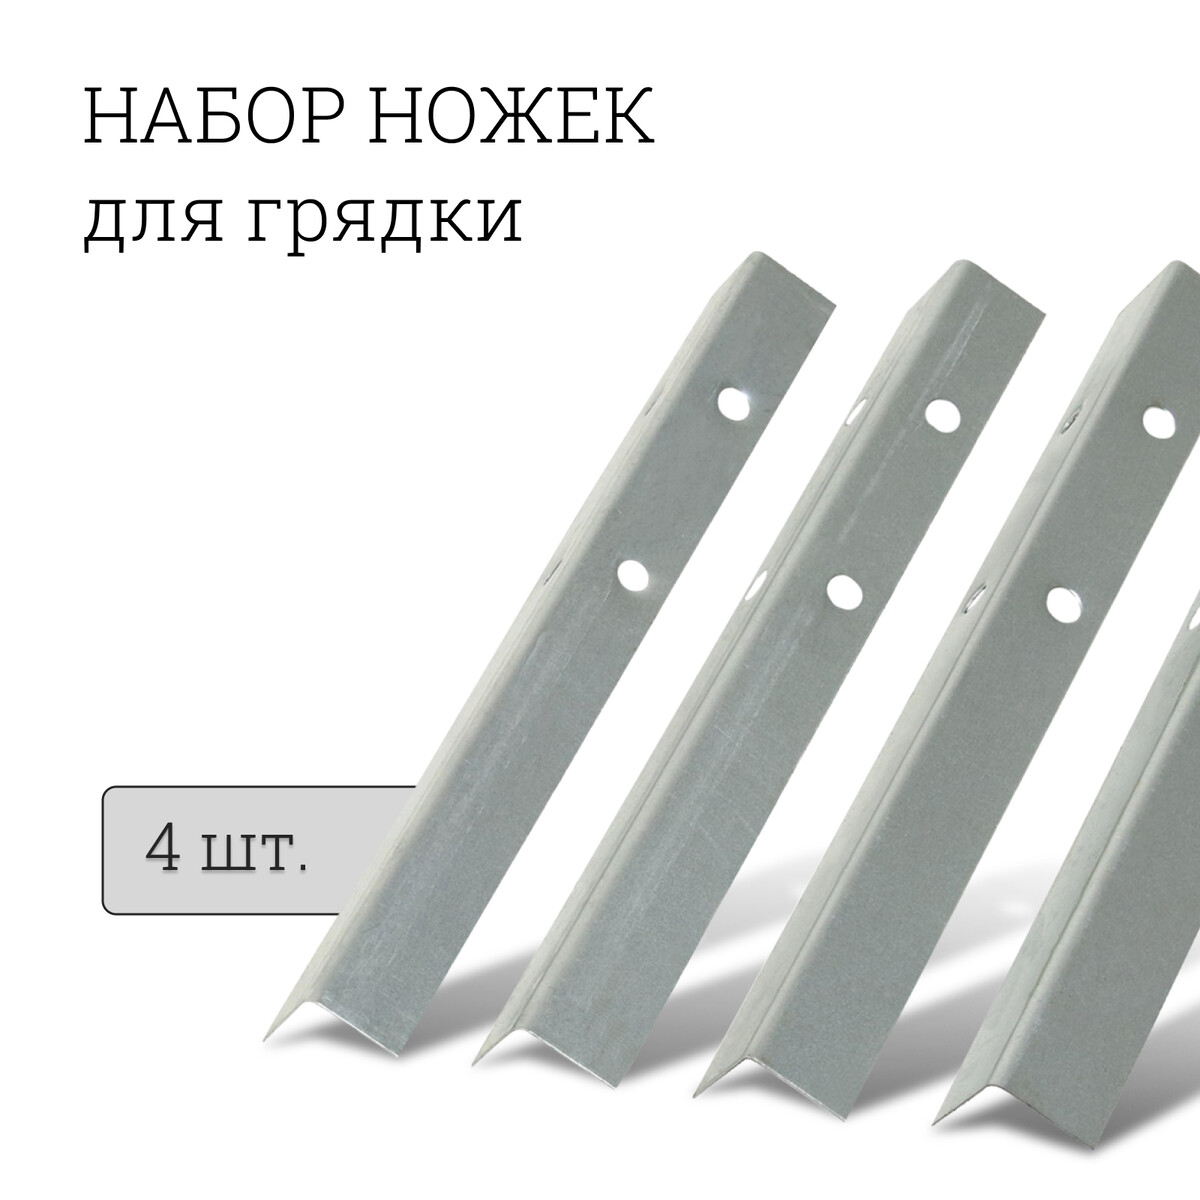 Набор ножек для грядки, 4 шт., оцинкованные, серый, greengo